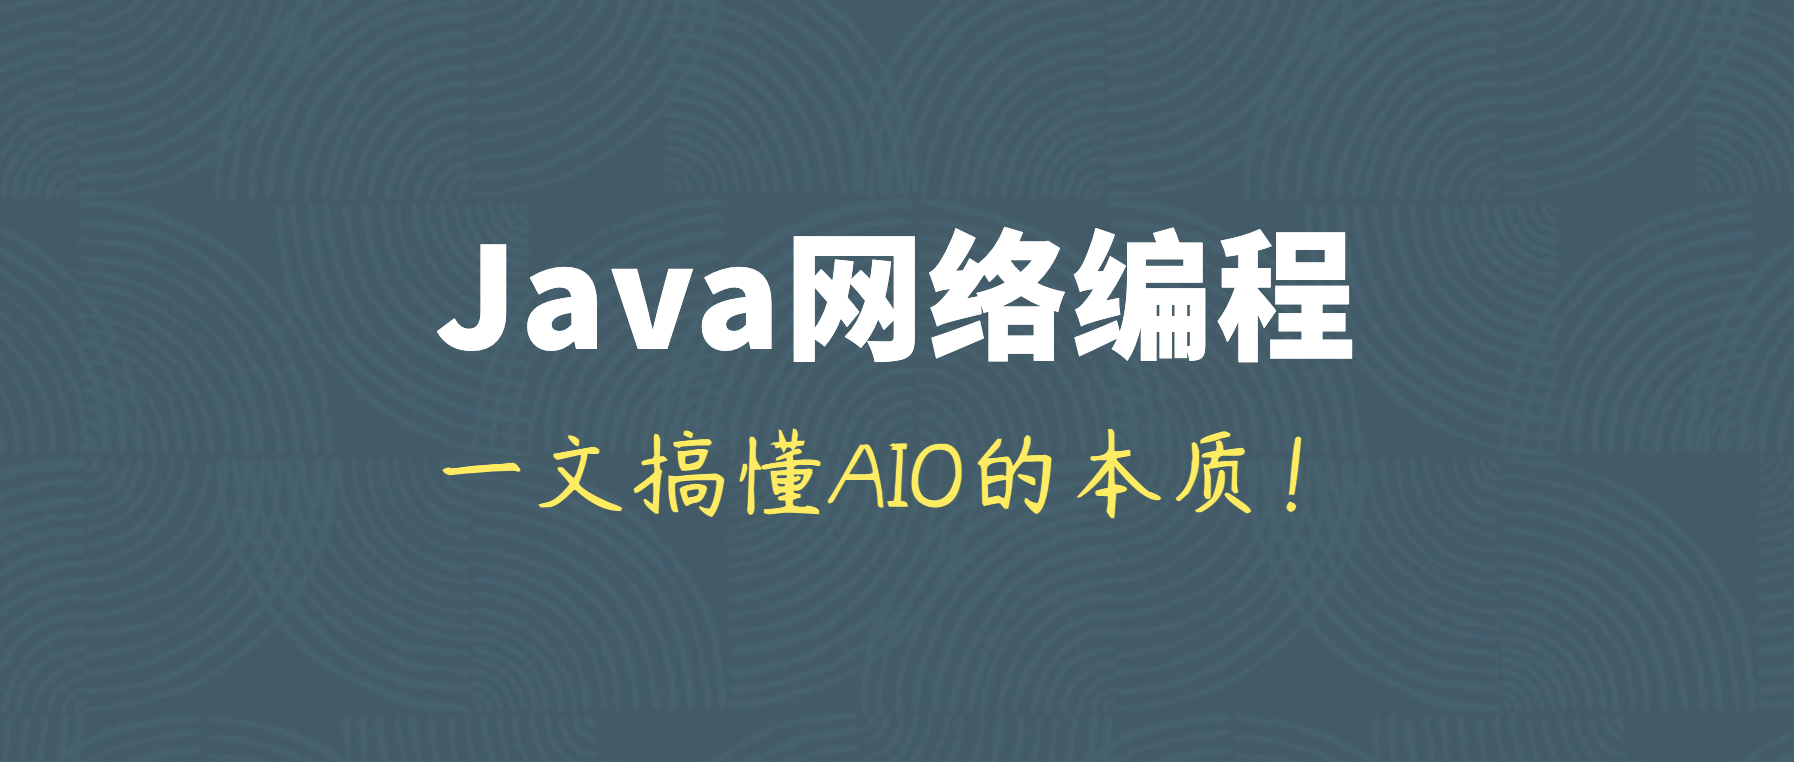 到底什么是Java AIO？为什么Netty会移除AOI？一文搞懂AIO的本质！